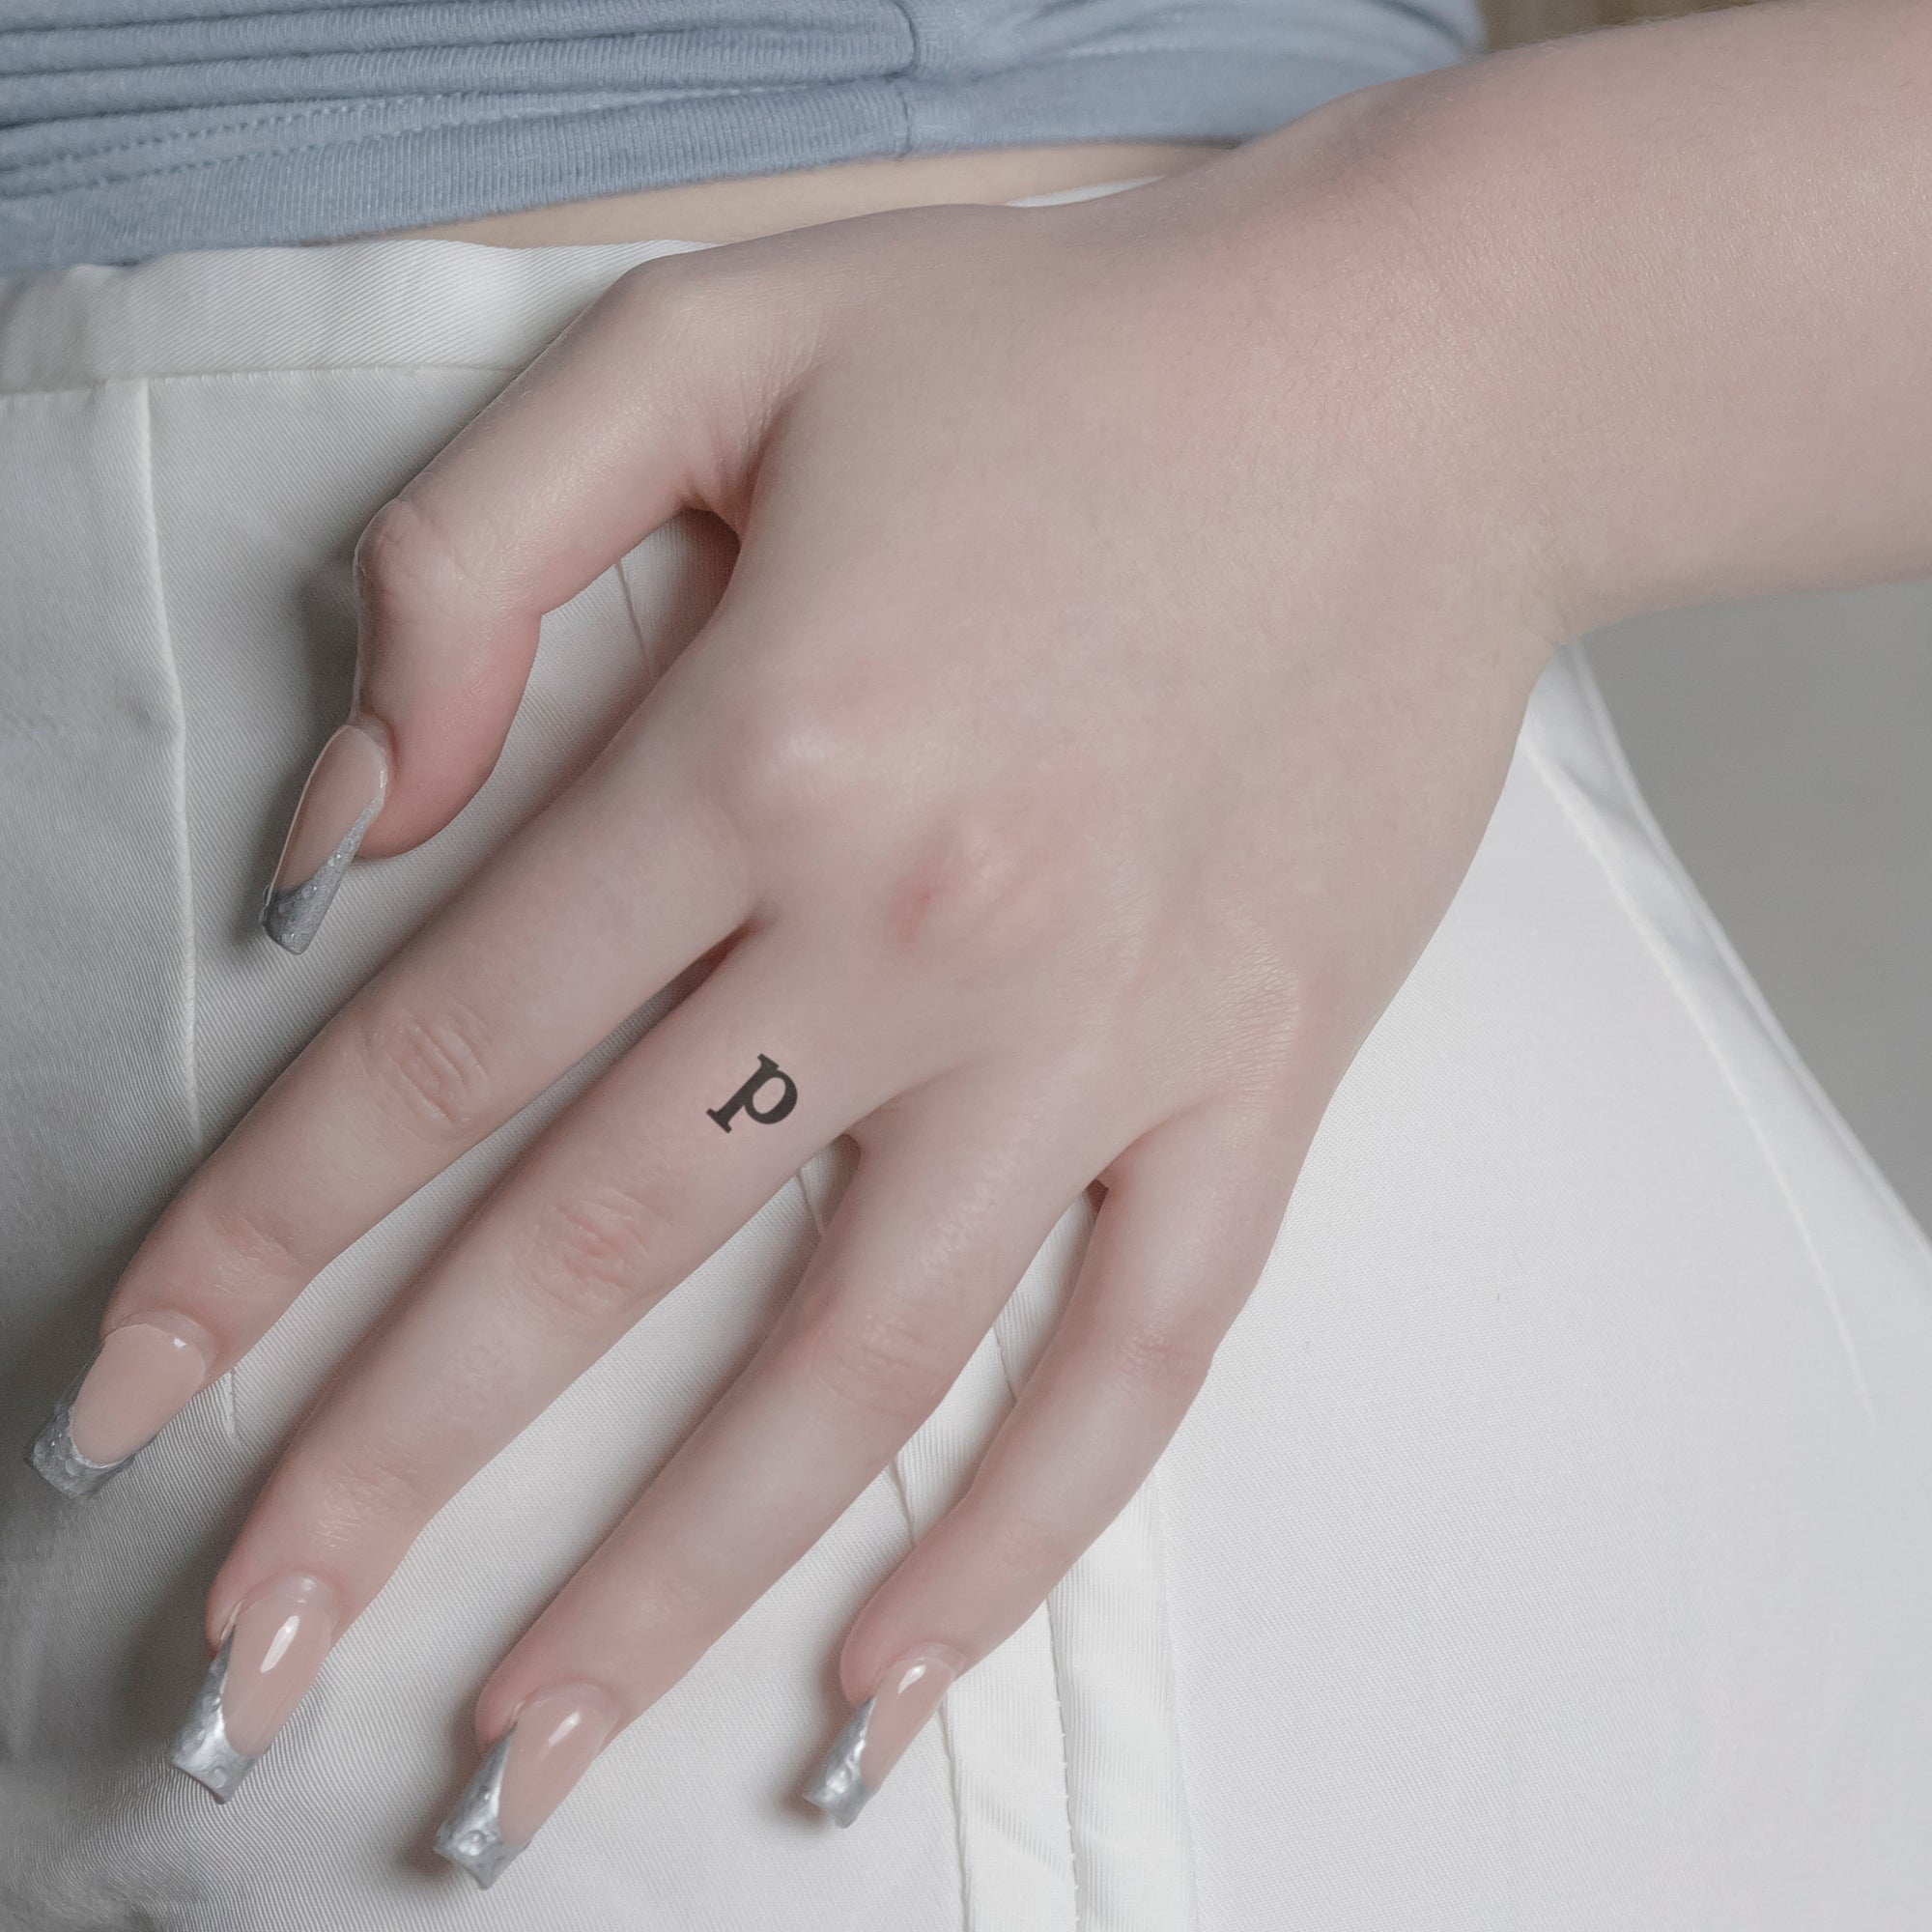 Schriftzug Tattoo Kleinbuchstabe: p von minink, der Marke für temporäre Tattoos.